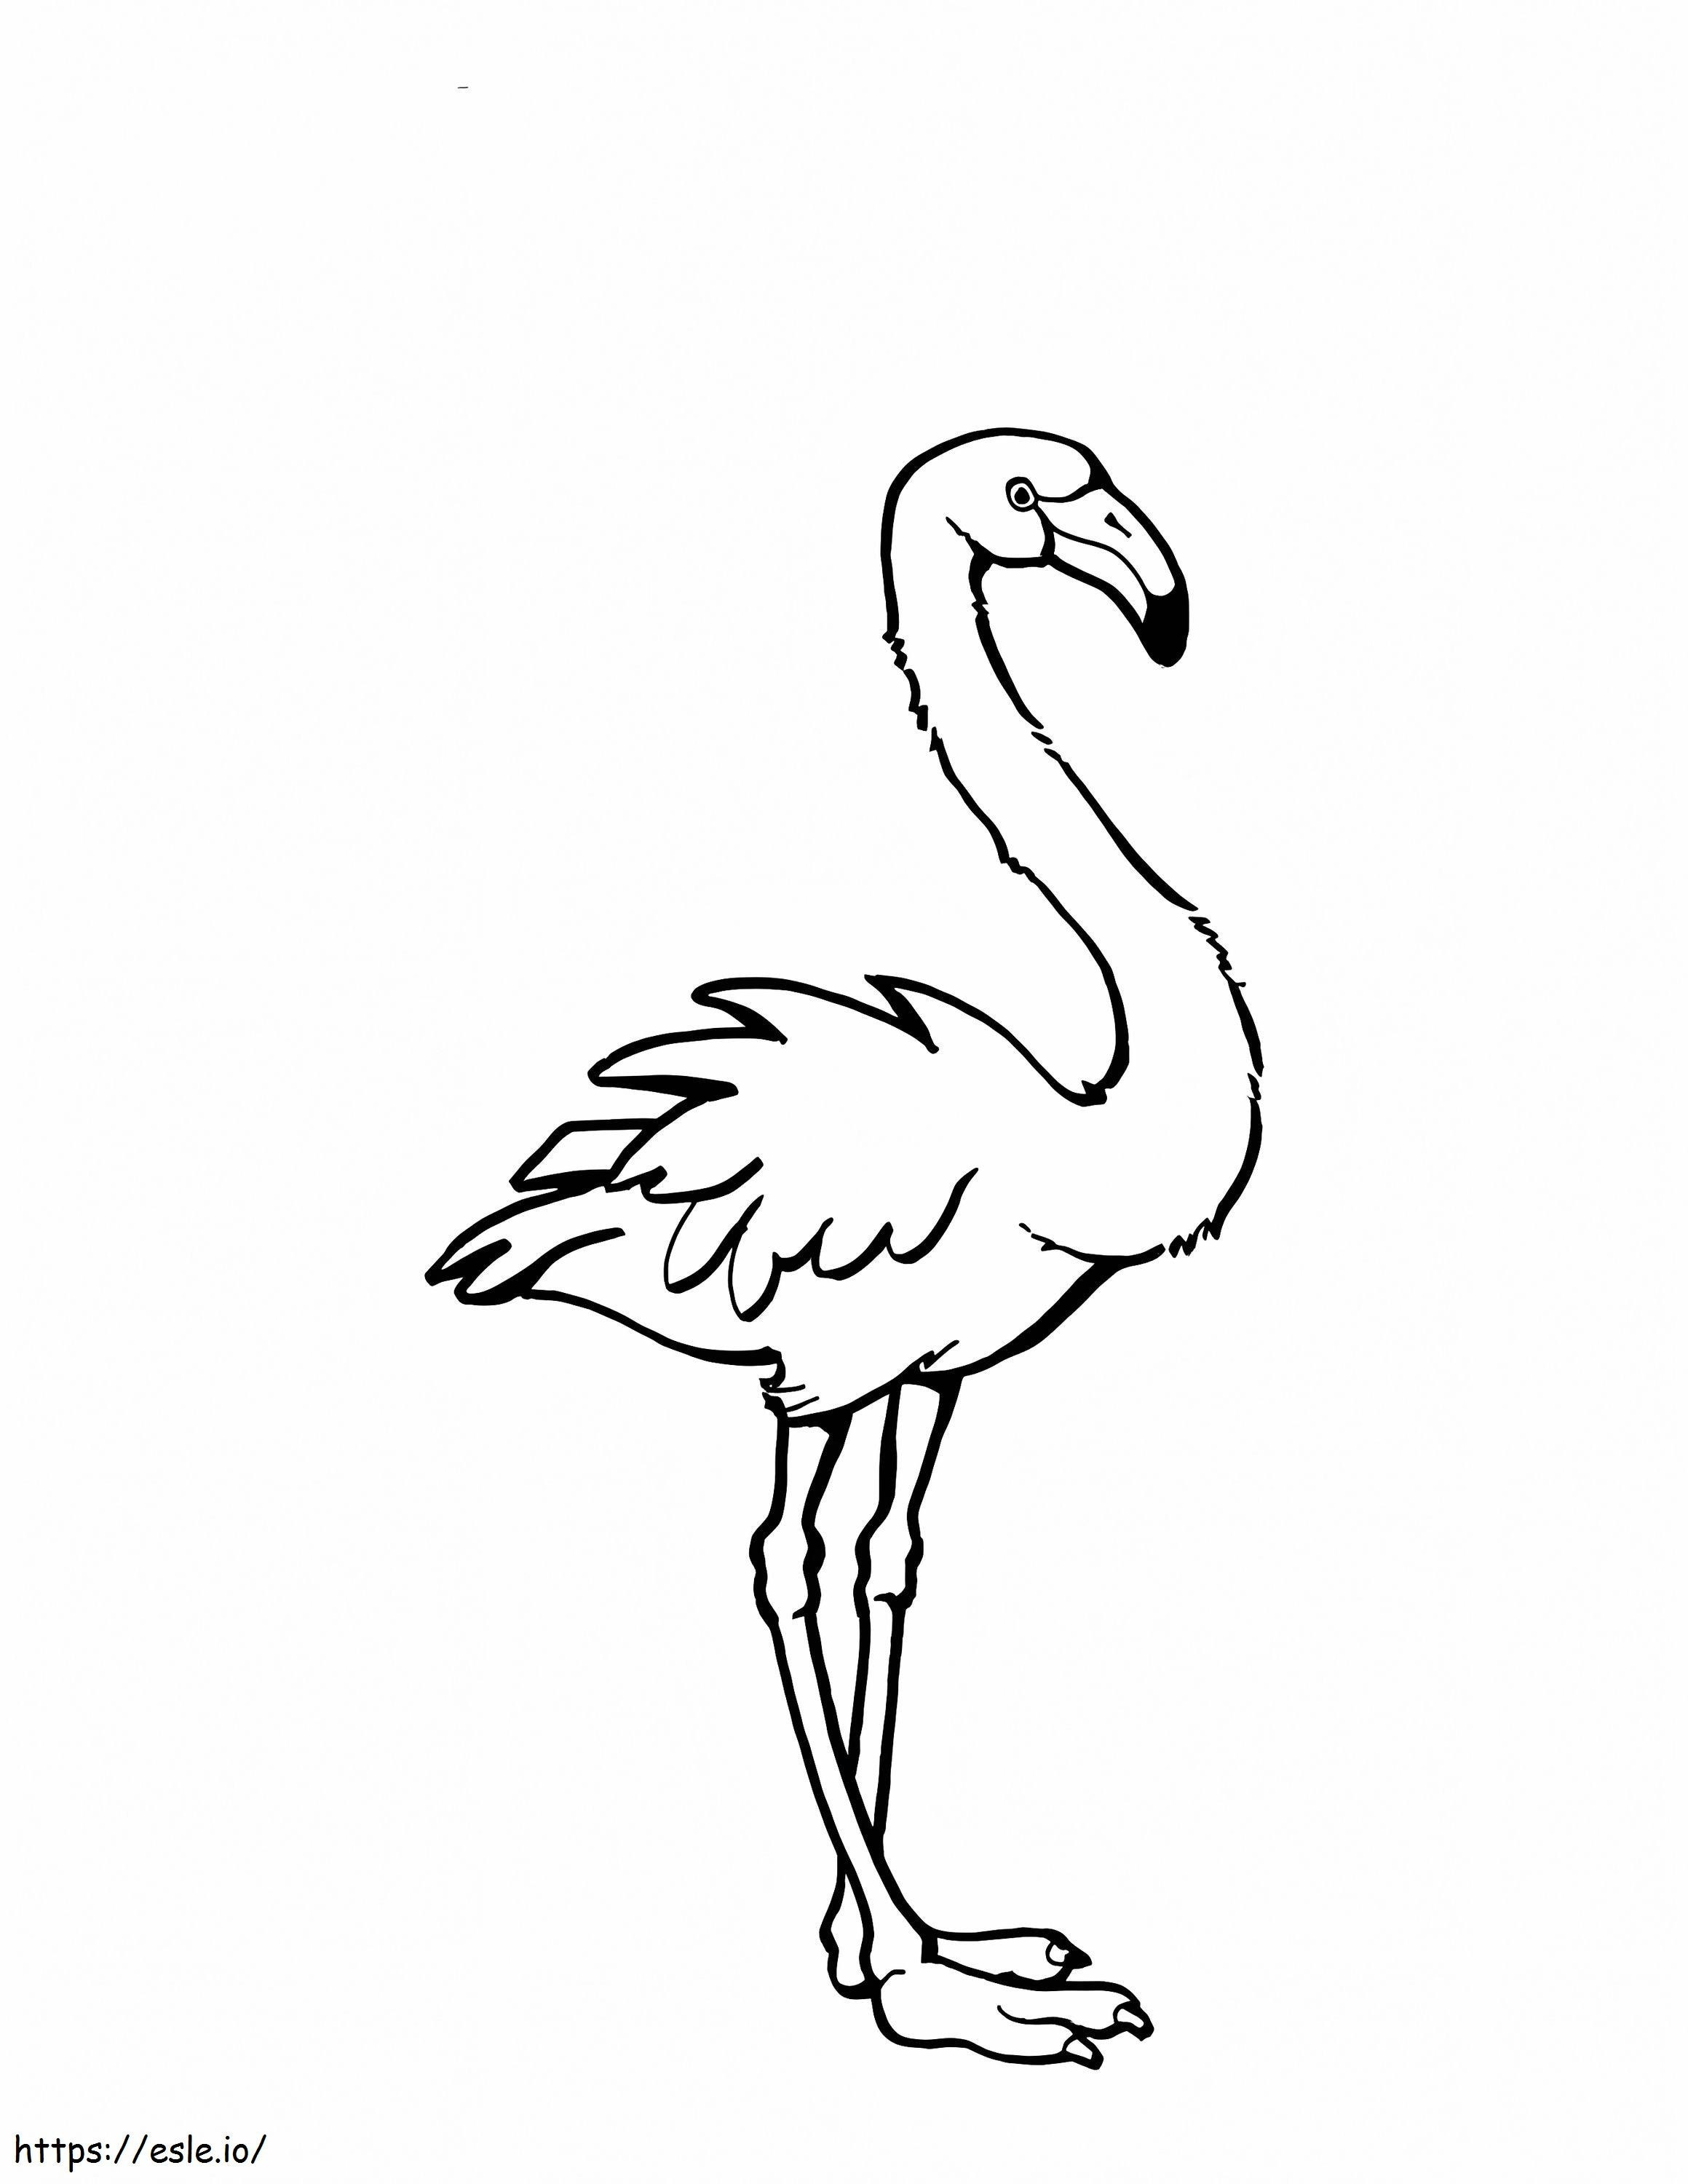 Pembe flamingo boyama